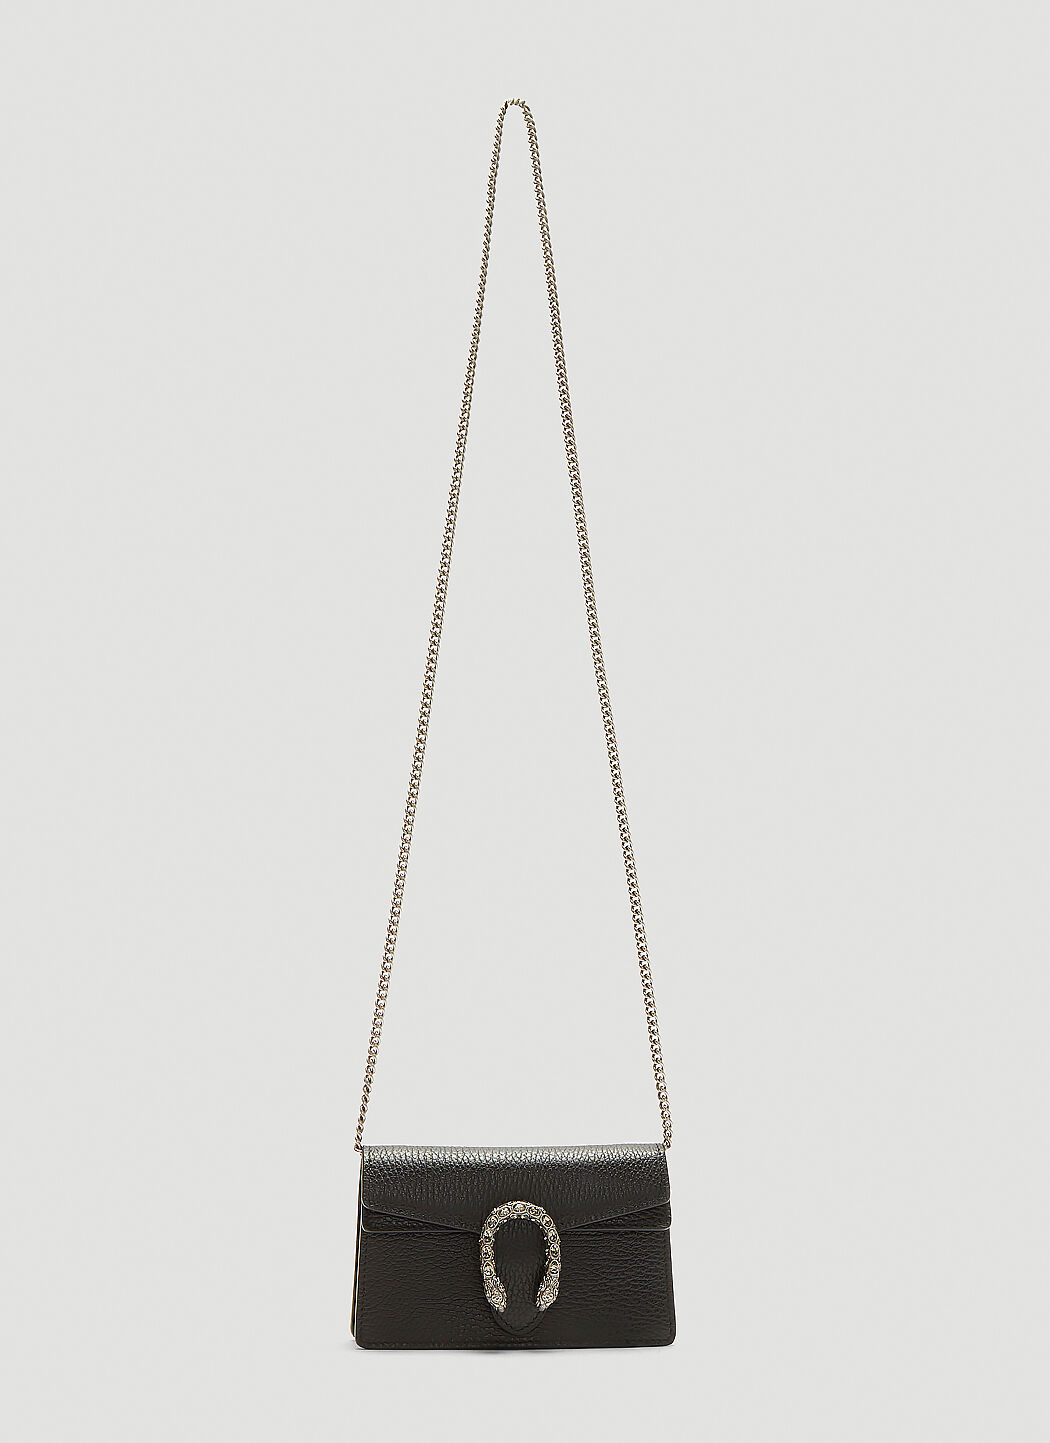 Saint Laurent Mini Crystal Dionysus Bag Black sla0235028